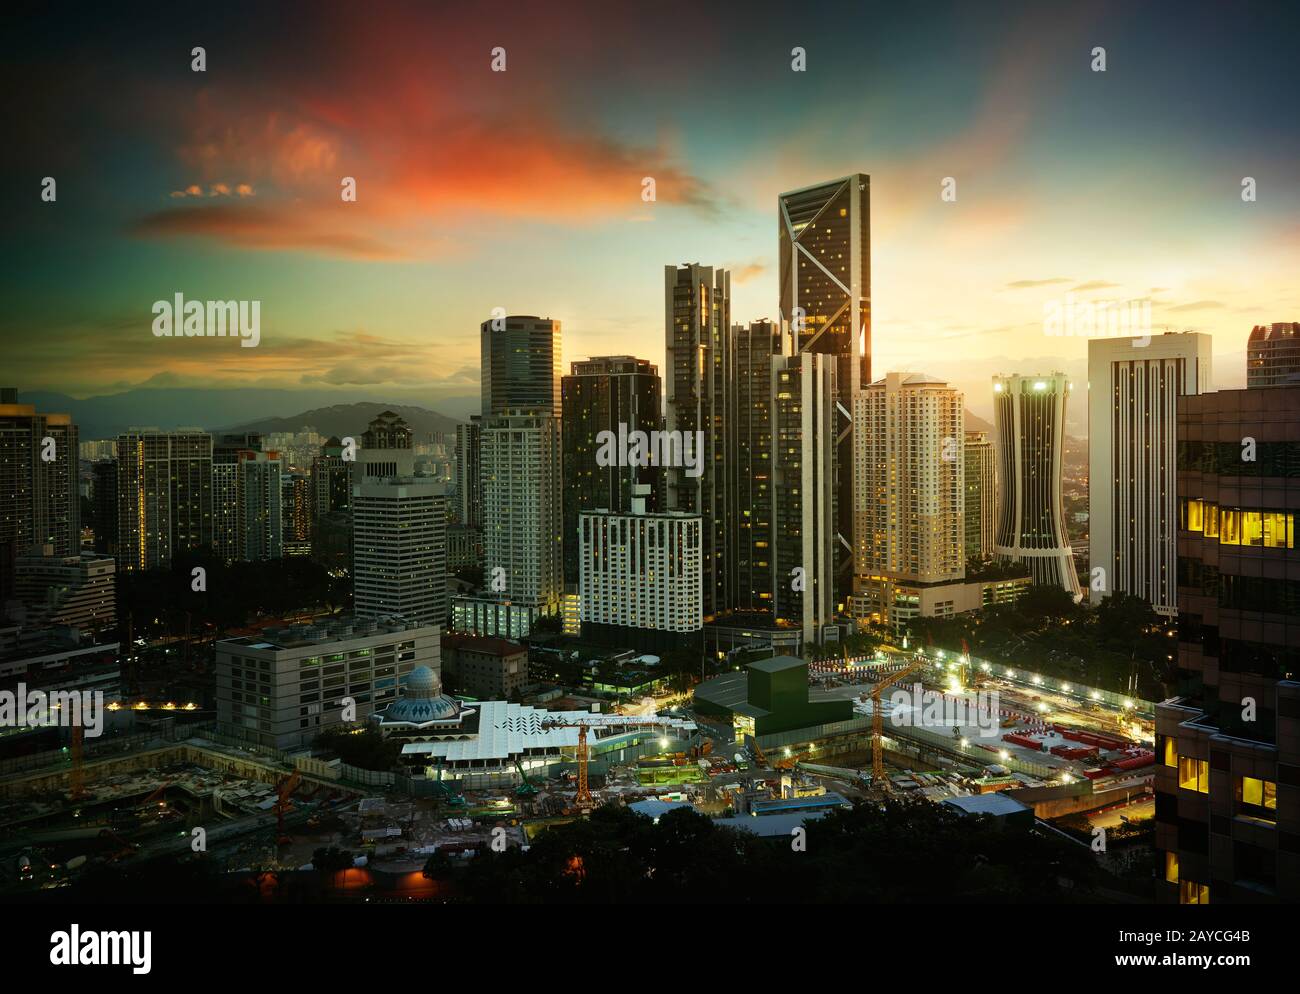 Stadtbild mit moderner und entwicklungsförderlicher Entwicklung Stockfoto